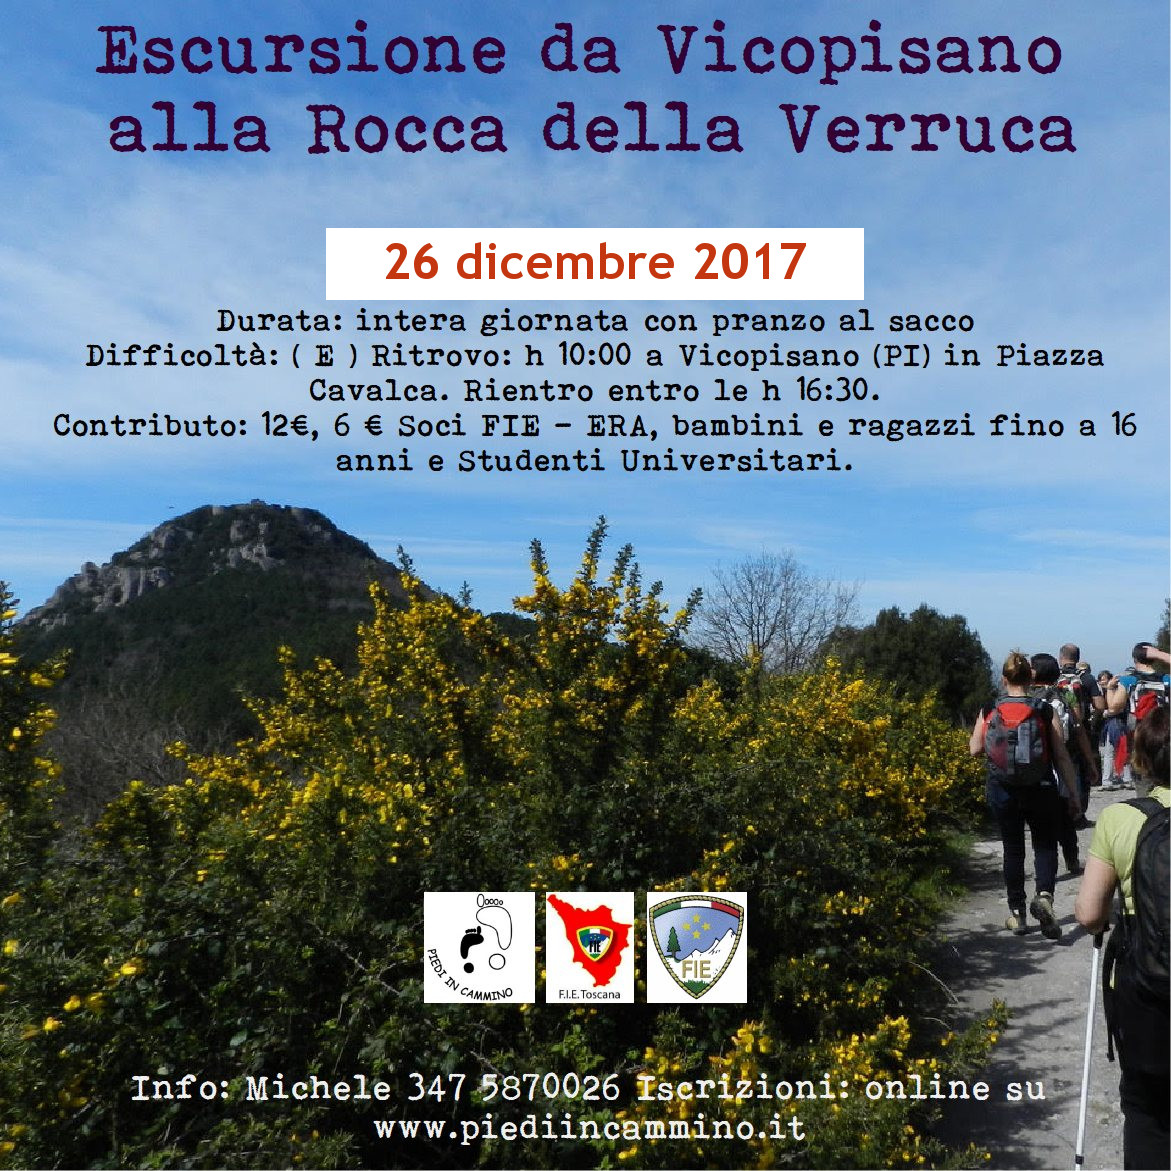 Escursione da Vicopisano alla Rocca della Verruca